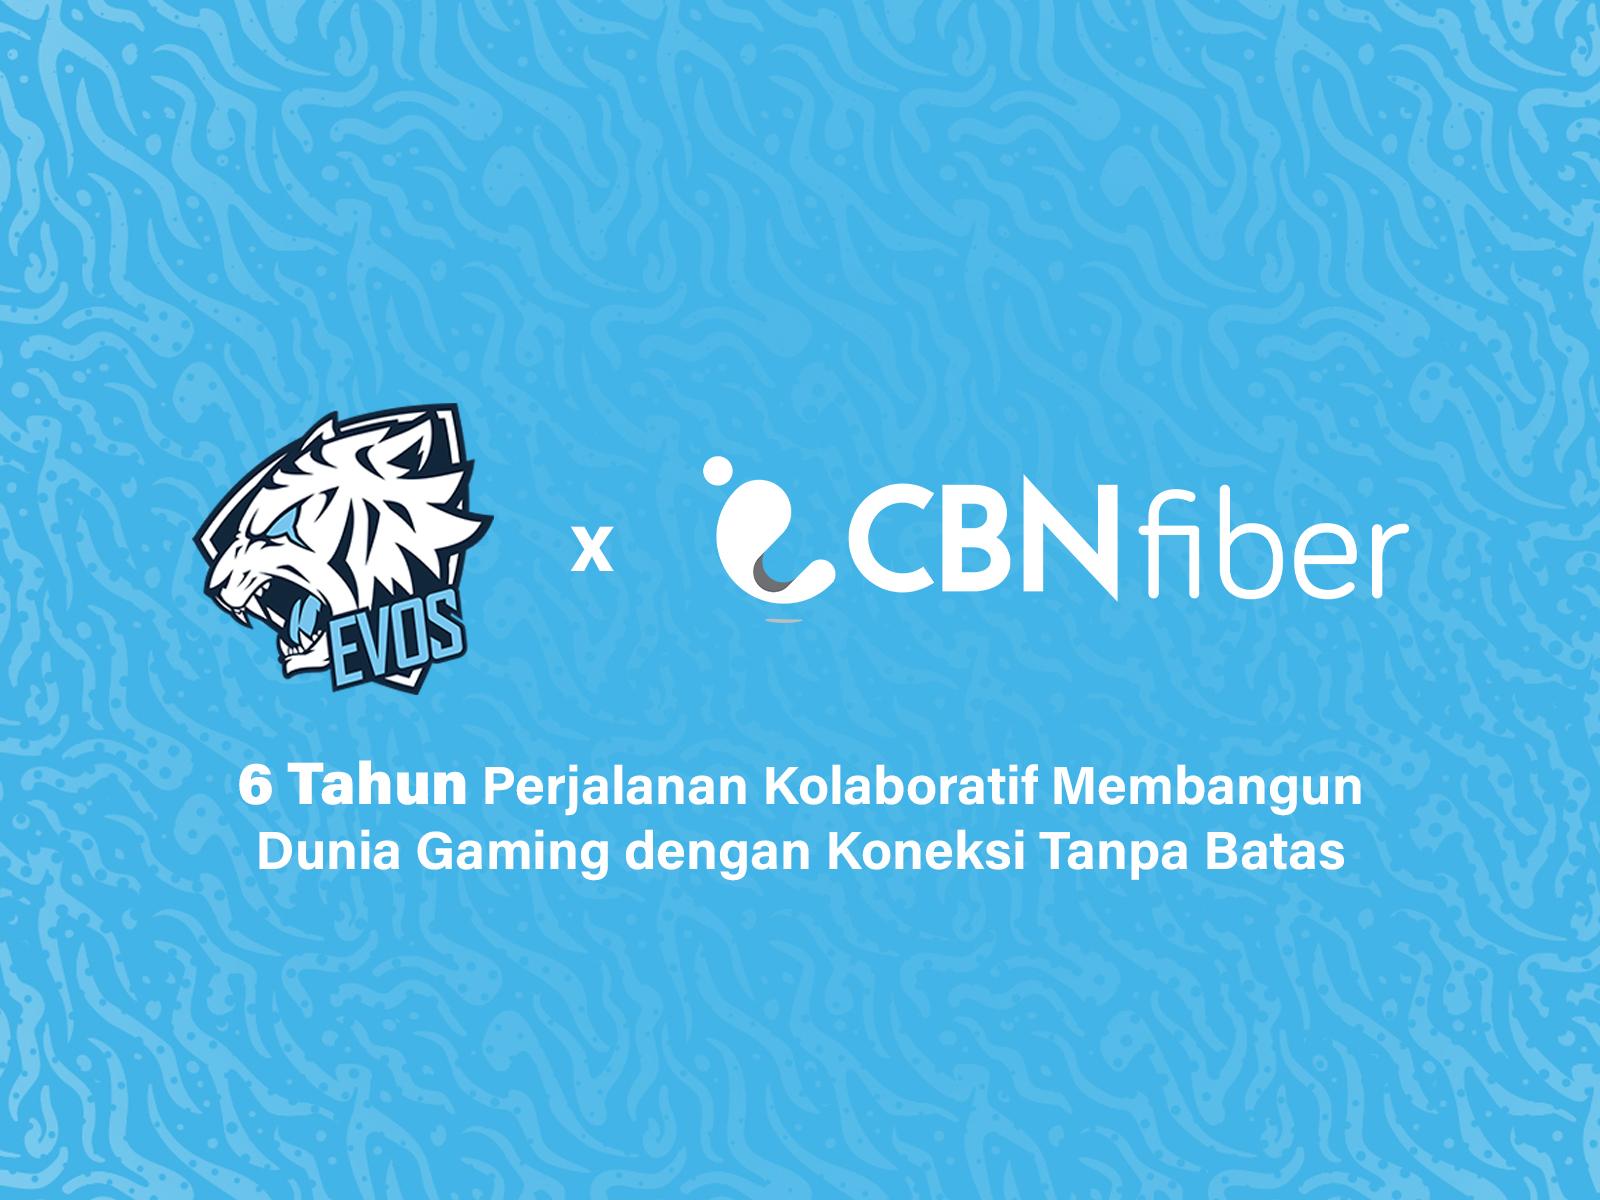 EVOS dan CBN Fiber, 6 Tahun Sinergi Kuat dalam Dunia Esports Indonesia